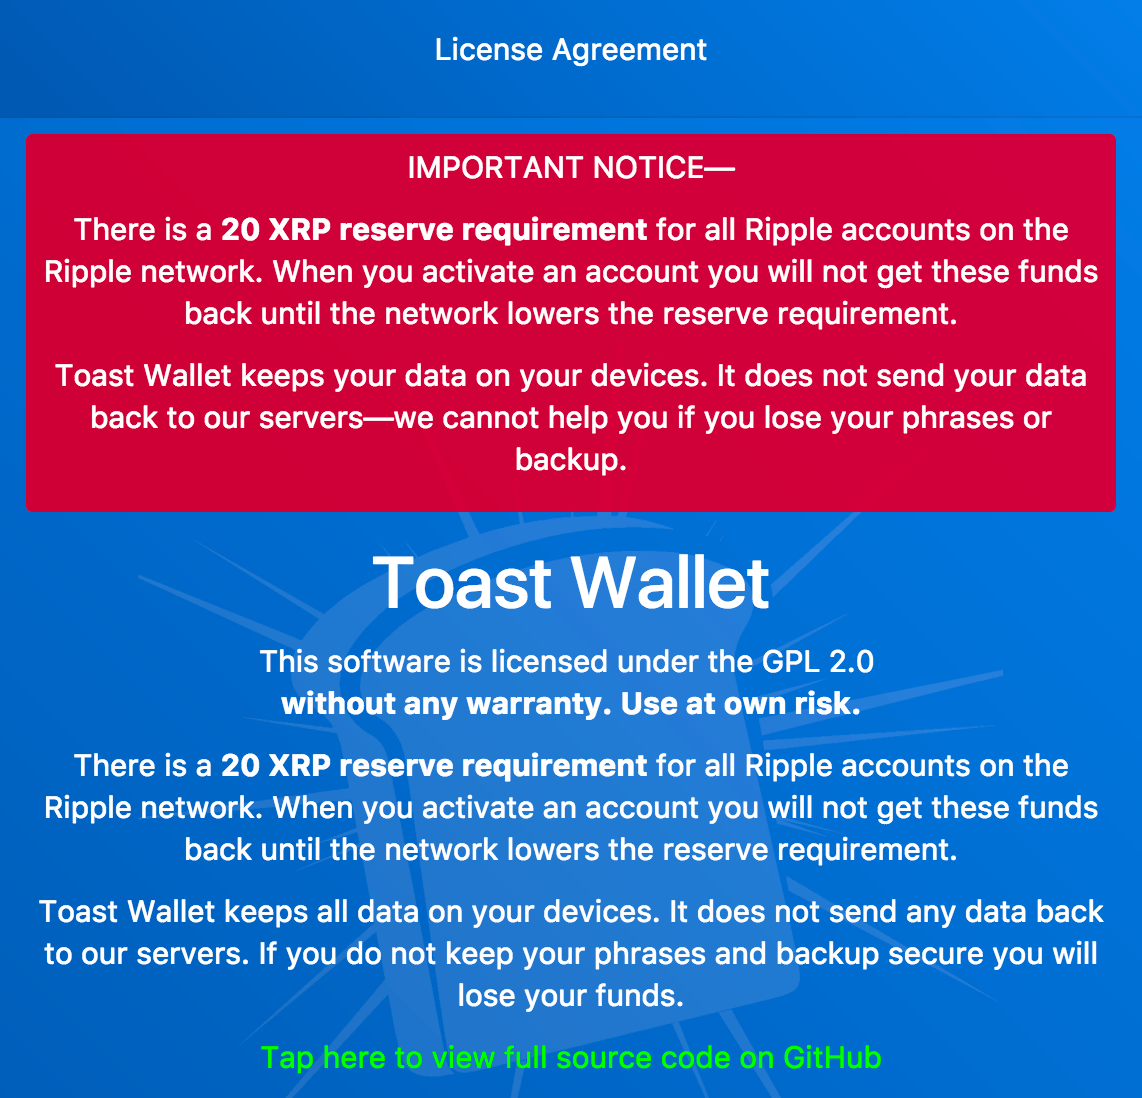 toast wallet